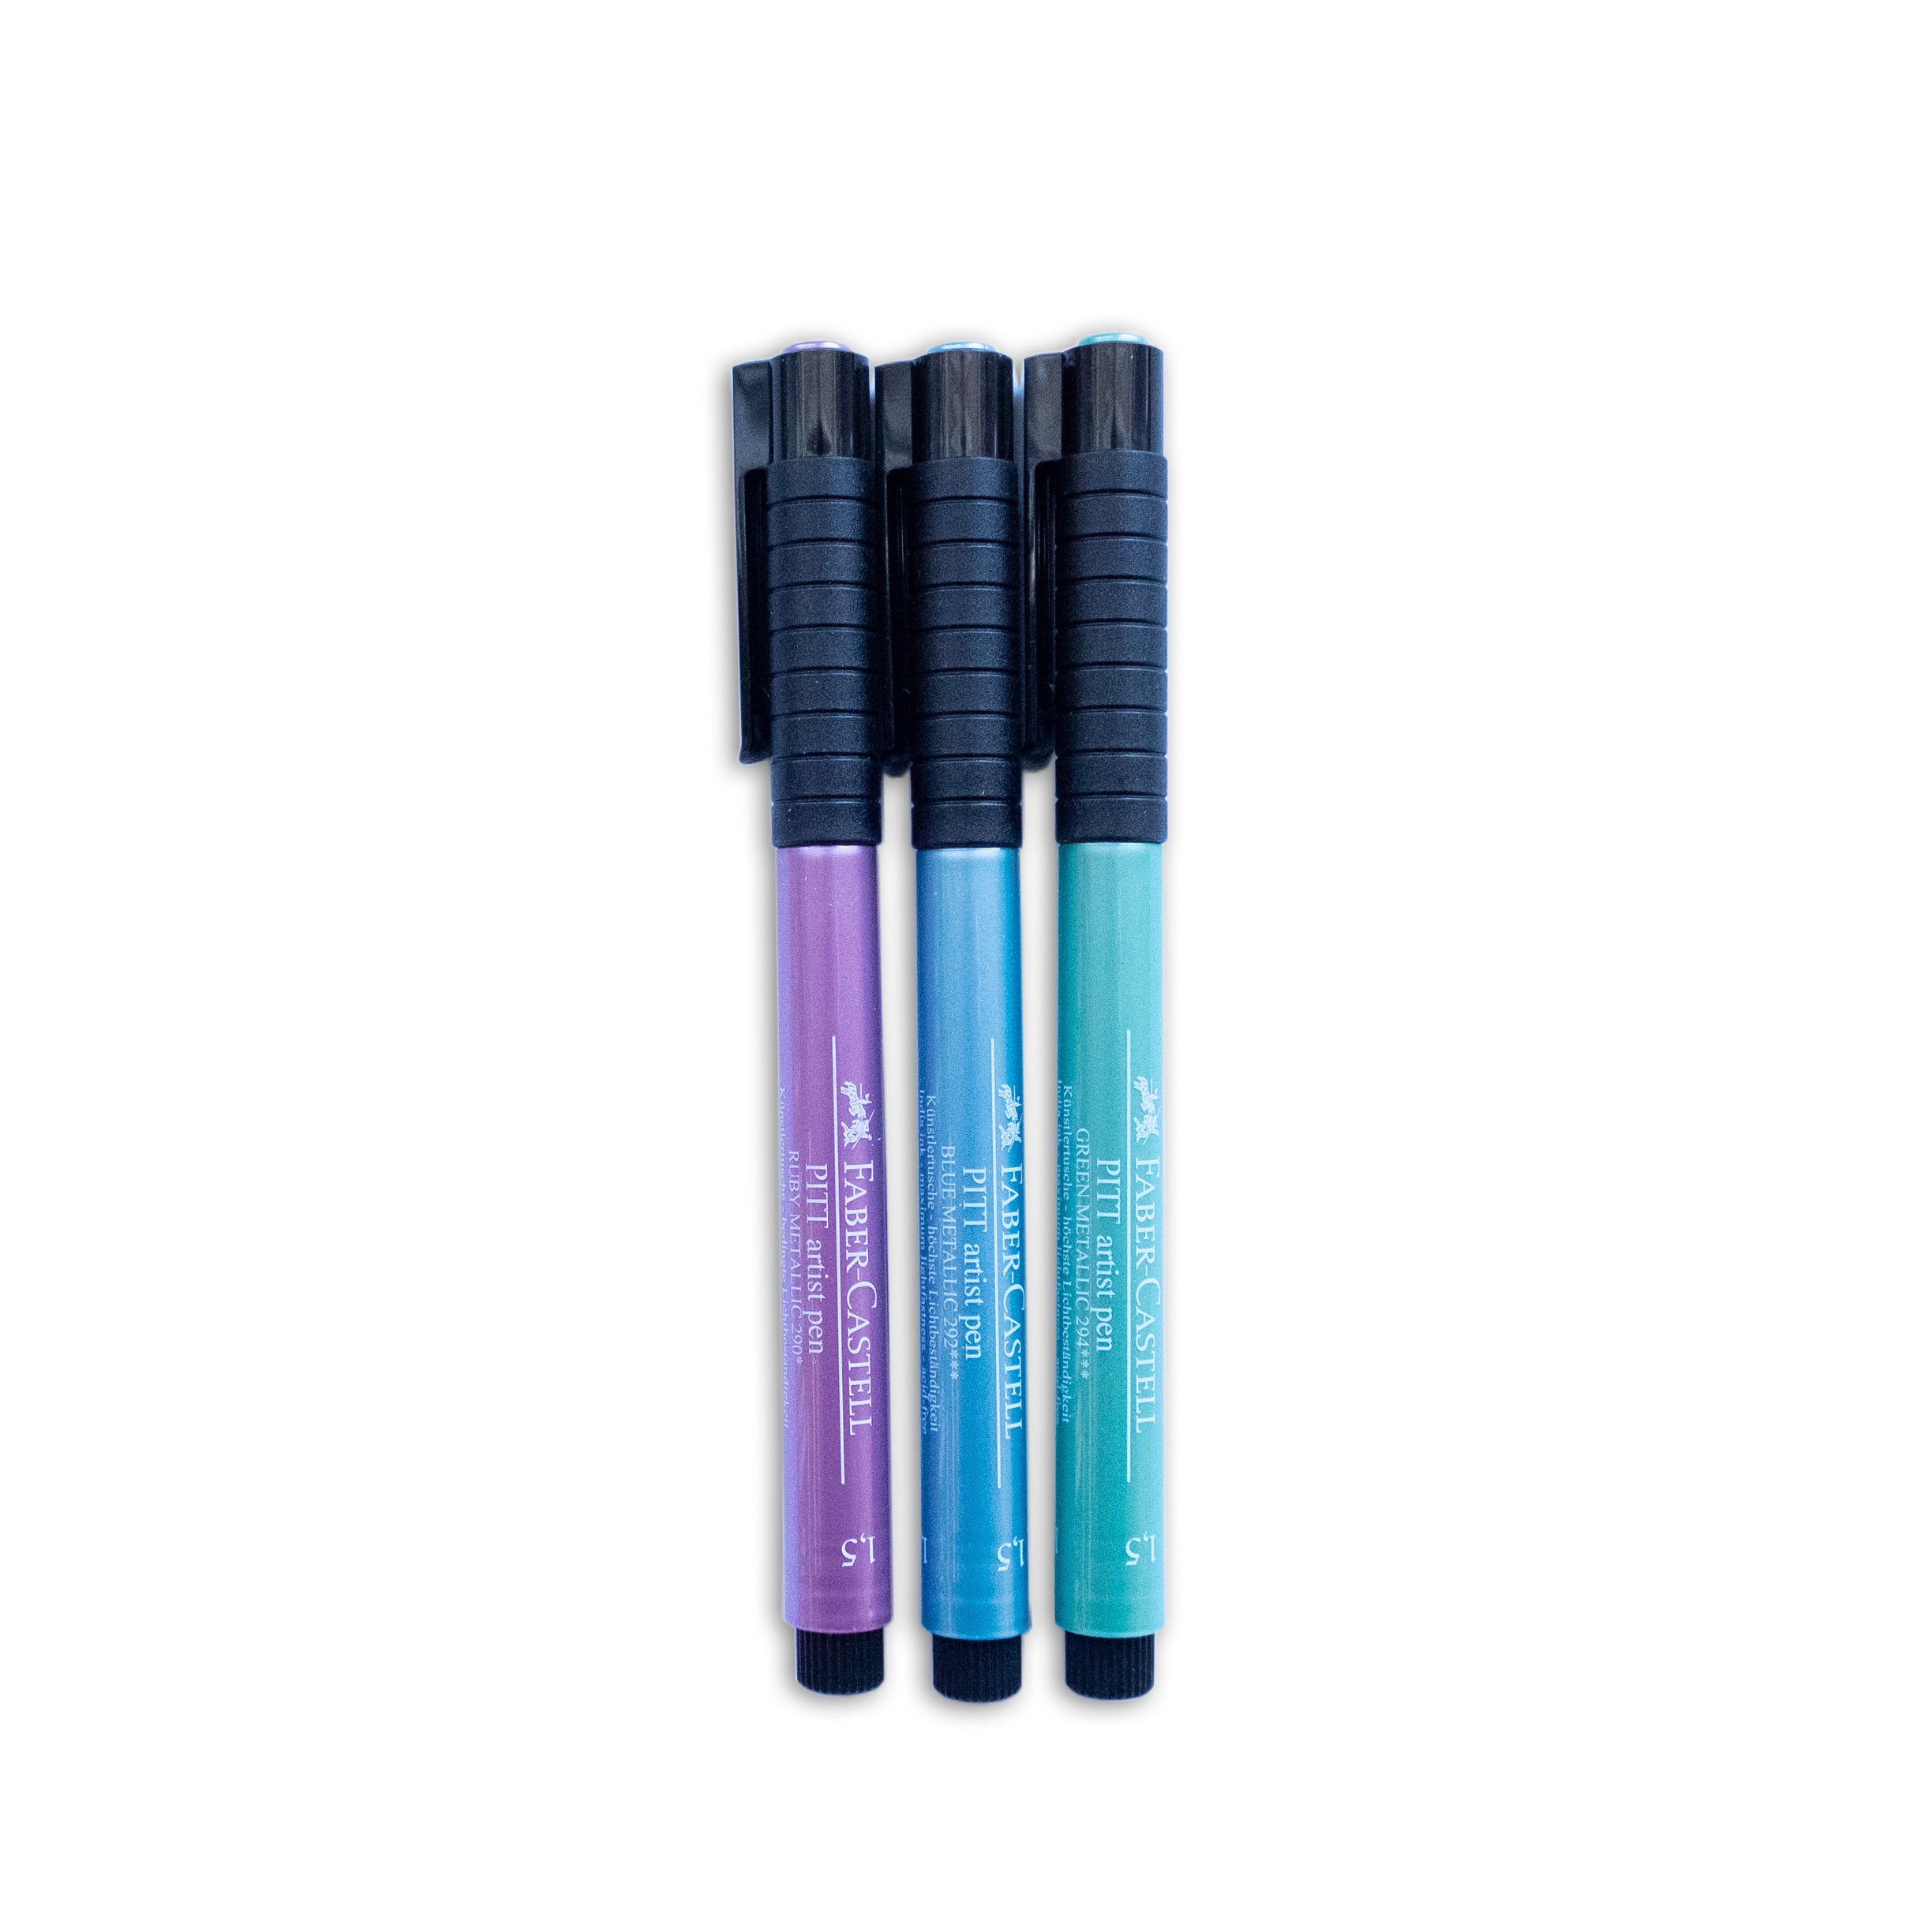 Faber-Castell Pitt Artist Pens, Mix & Match Metallic Color Set